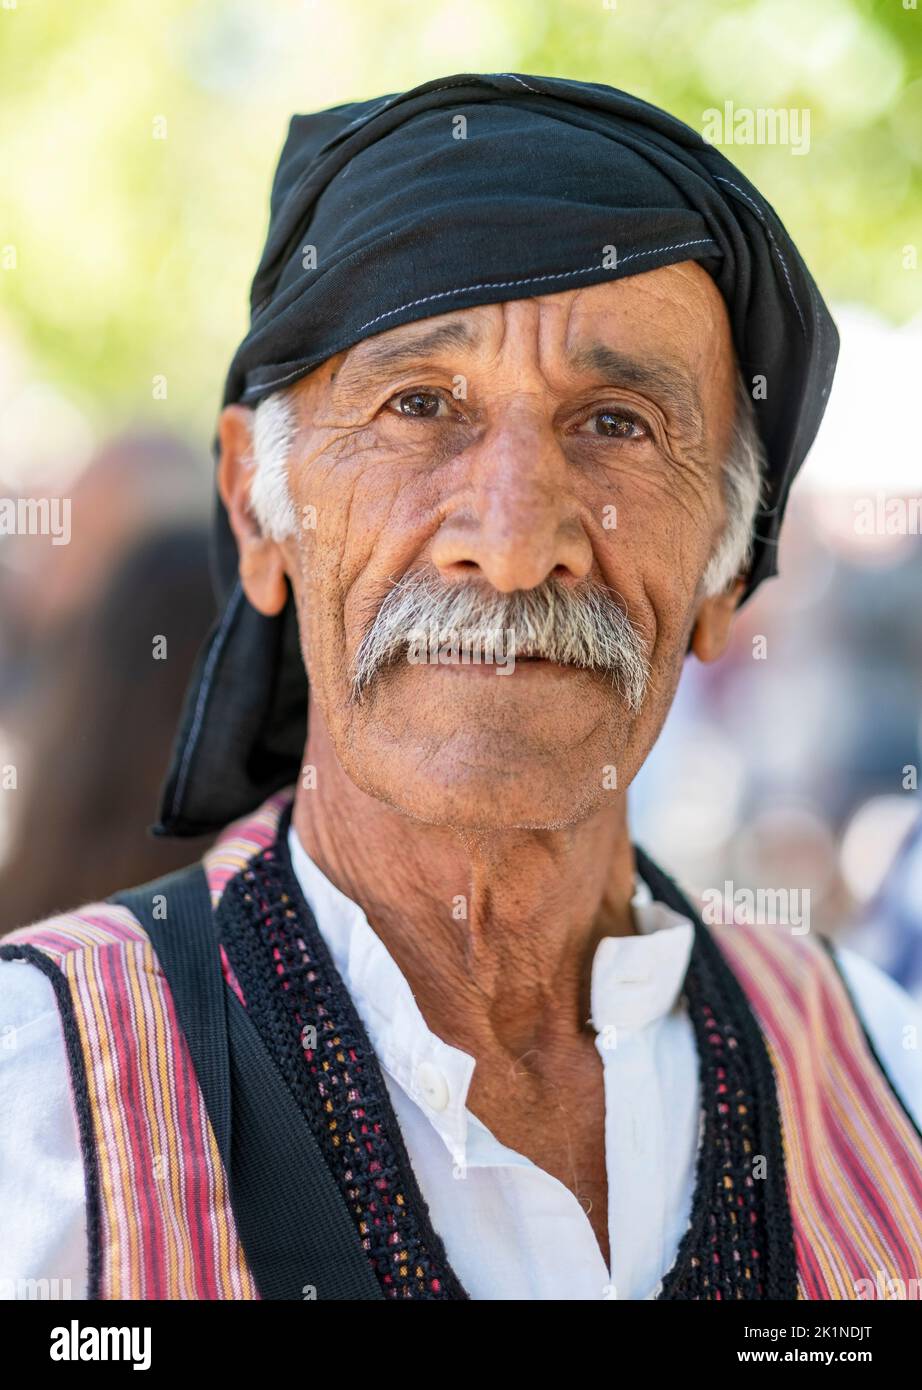 Ritratto di un cipriota in abito tradizionale al Statos-Agios Fotios Rural Festival, nella regione di Paphos, Cipro. Foto Stock